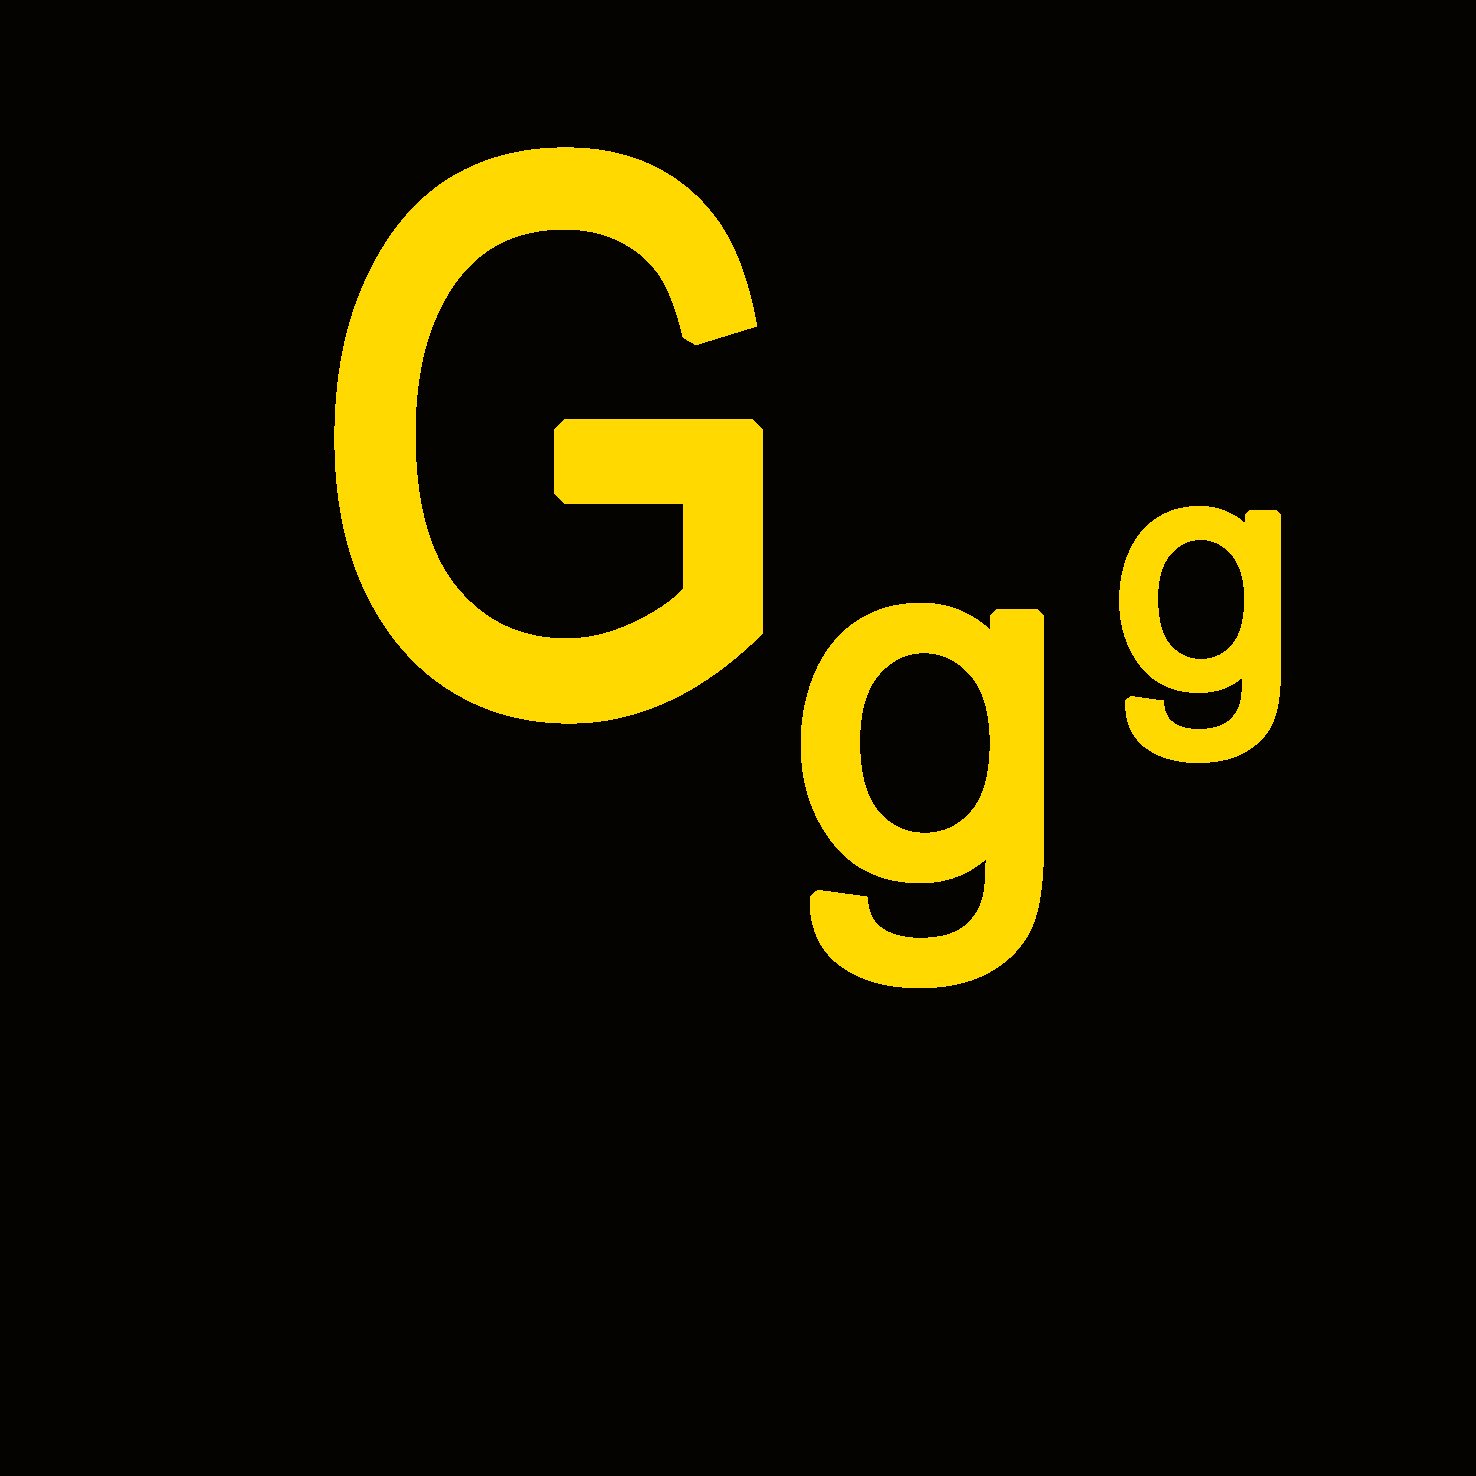 Personen - G